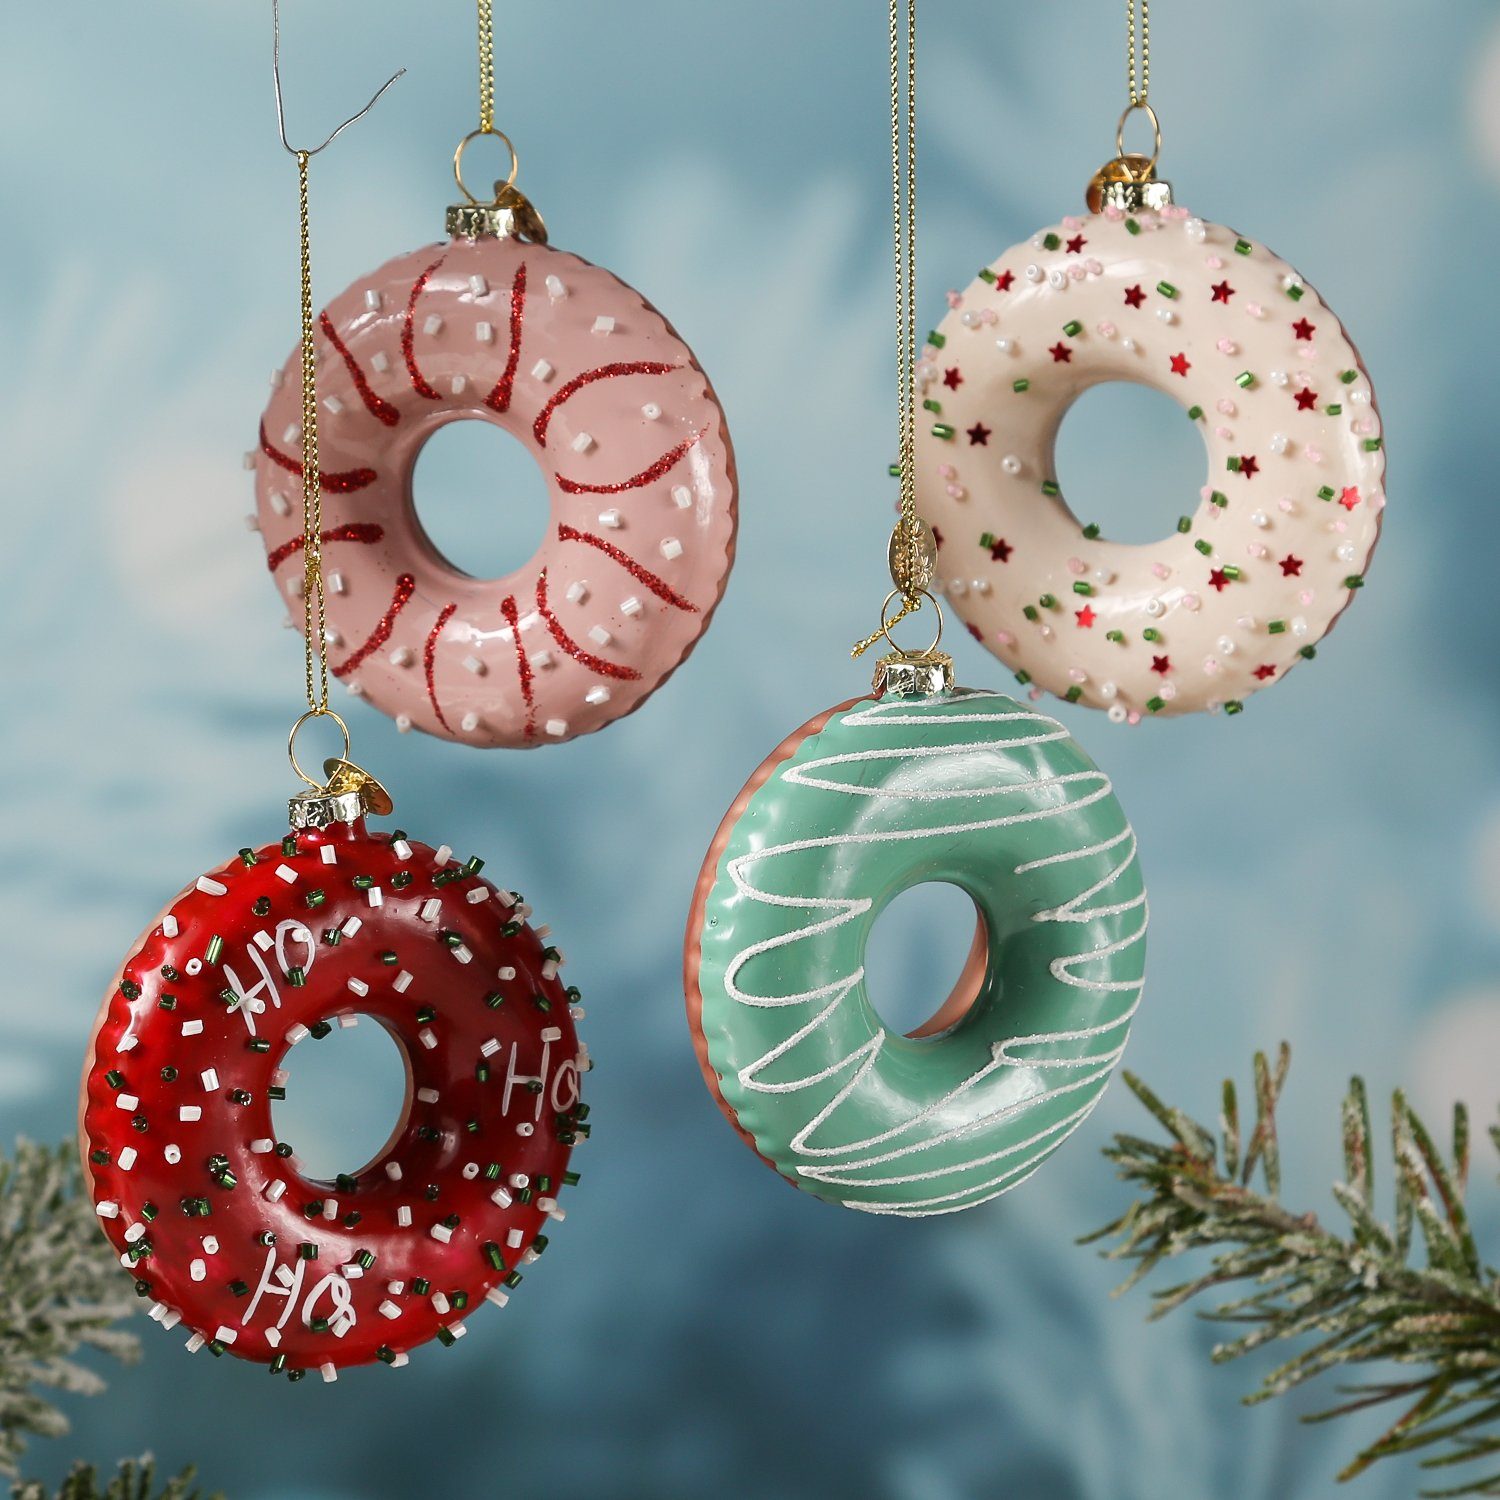 MARELIDA Christbaumschmuck Weihnachtsbaumschmuck Glas Donut 8,5cm mit rosa Streuseln bunten H